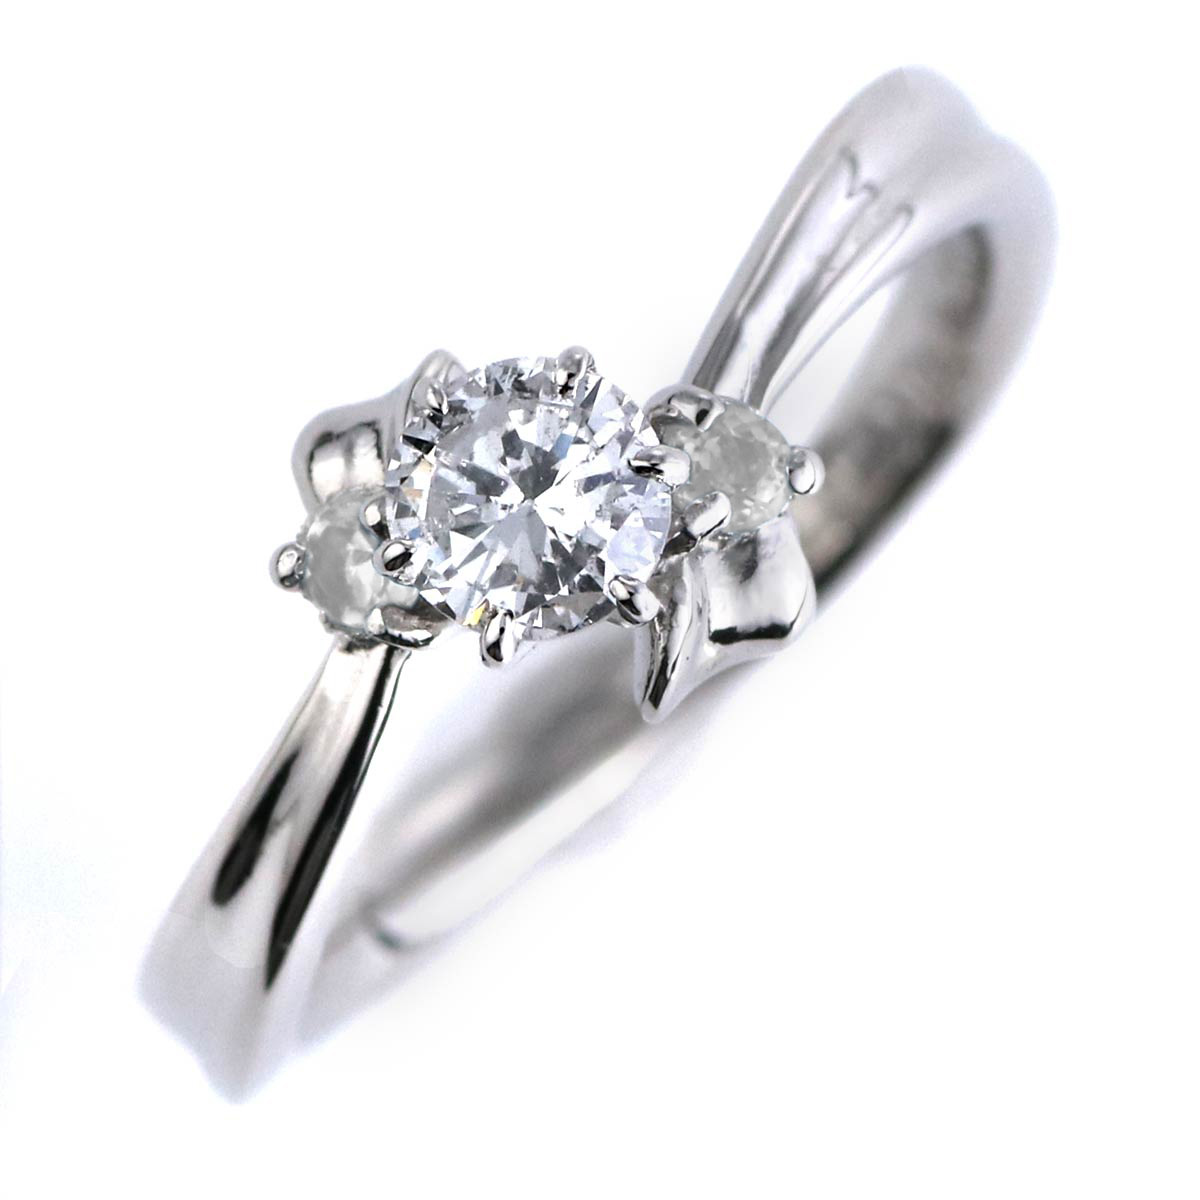 婚約指輪 ダイヤモンド プラチナリング 一粒 大粒 指輪 エンゲージリング 0.4ct プロポーズ用 レディース 人気 ダイヤ 刻印無料 6月 誕生石 ムーンストーン